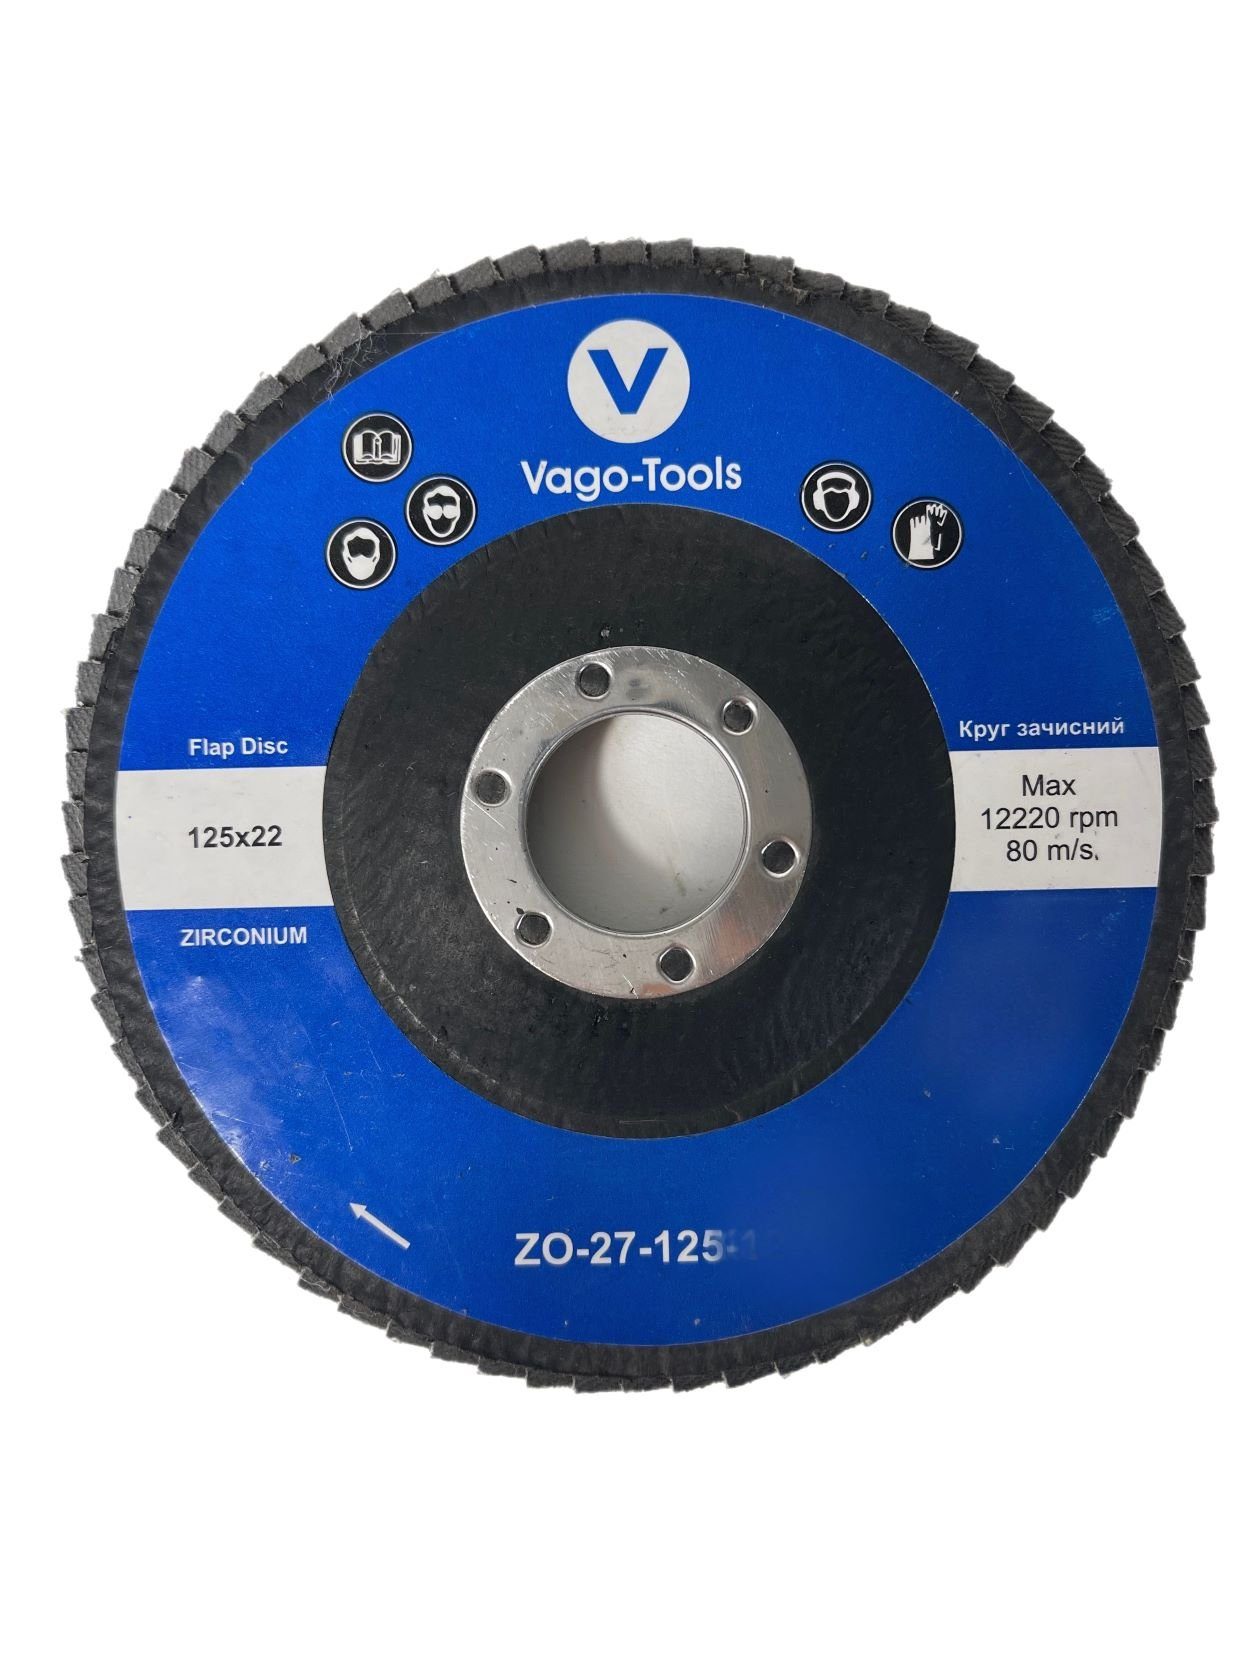 VaGo-Tools Schleifscheibe Fächerschleifscheiben 125mm P40 flach Blau 10x, (Packung)